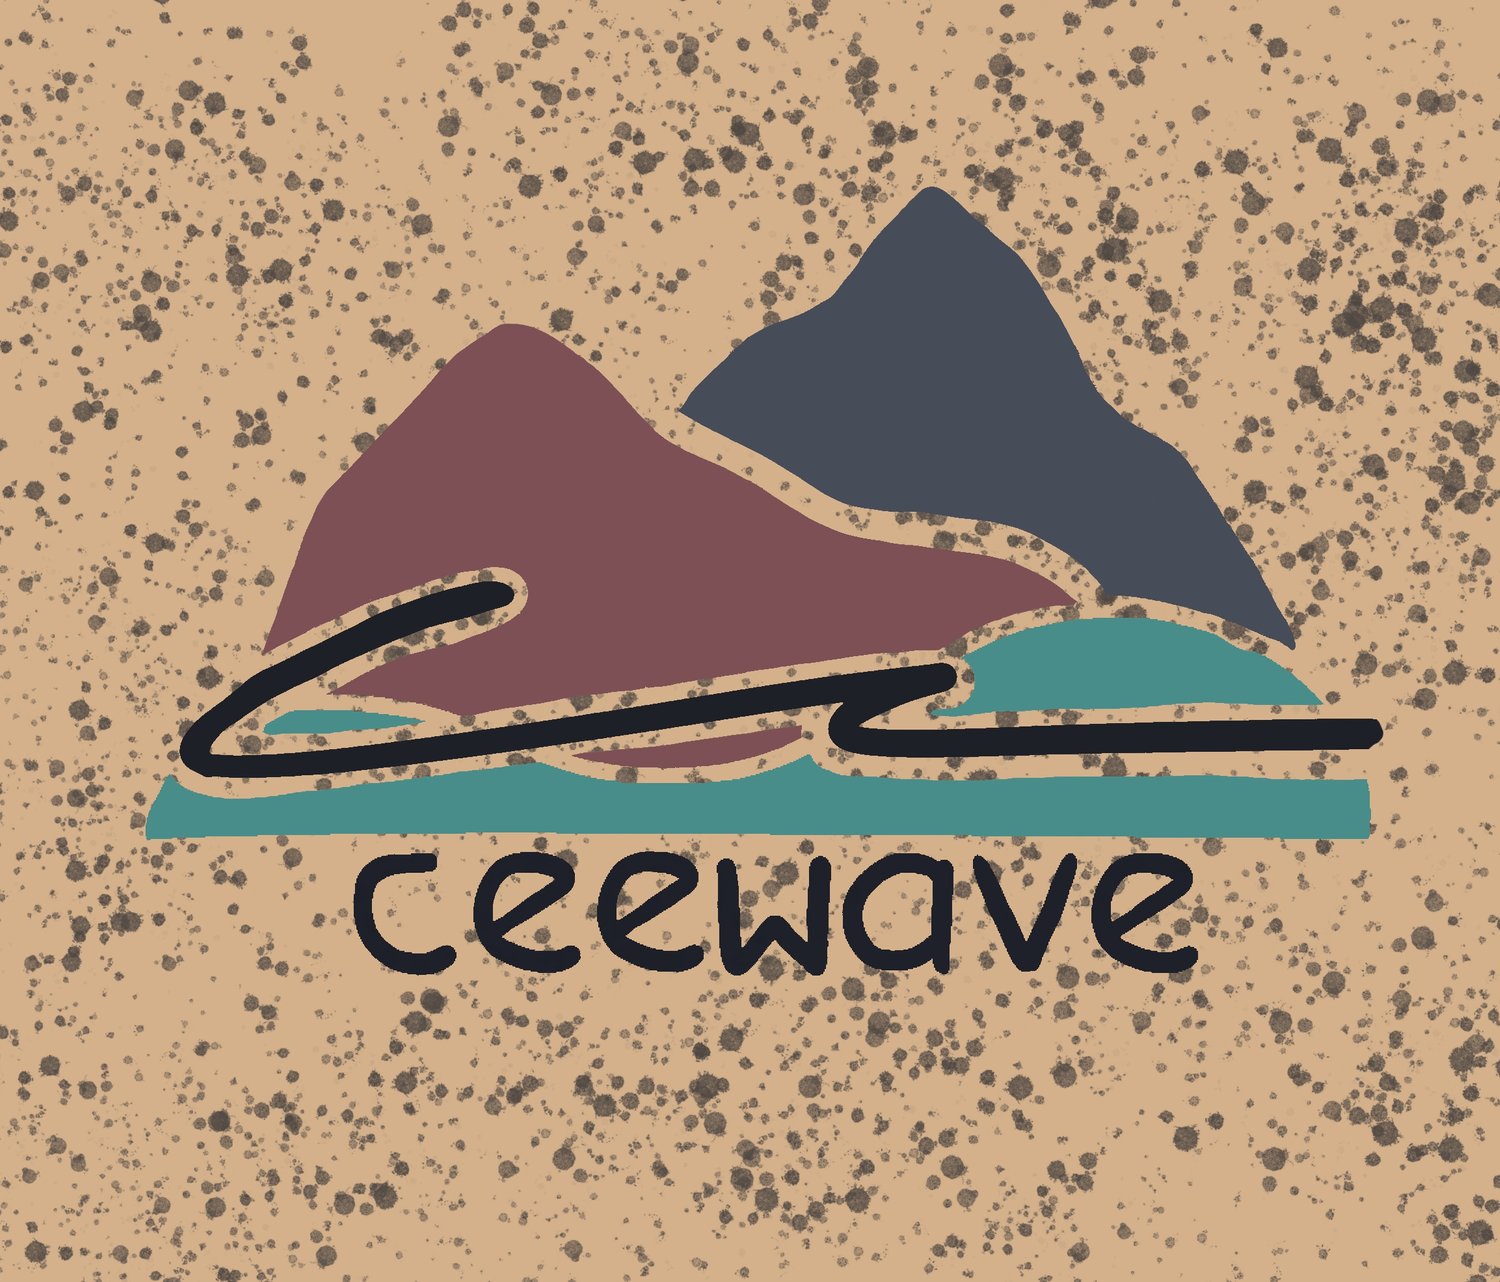 Ceewave